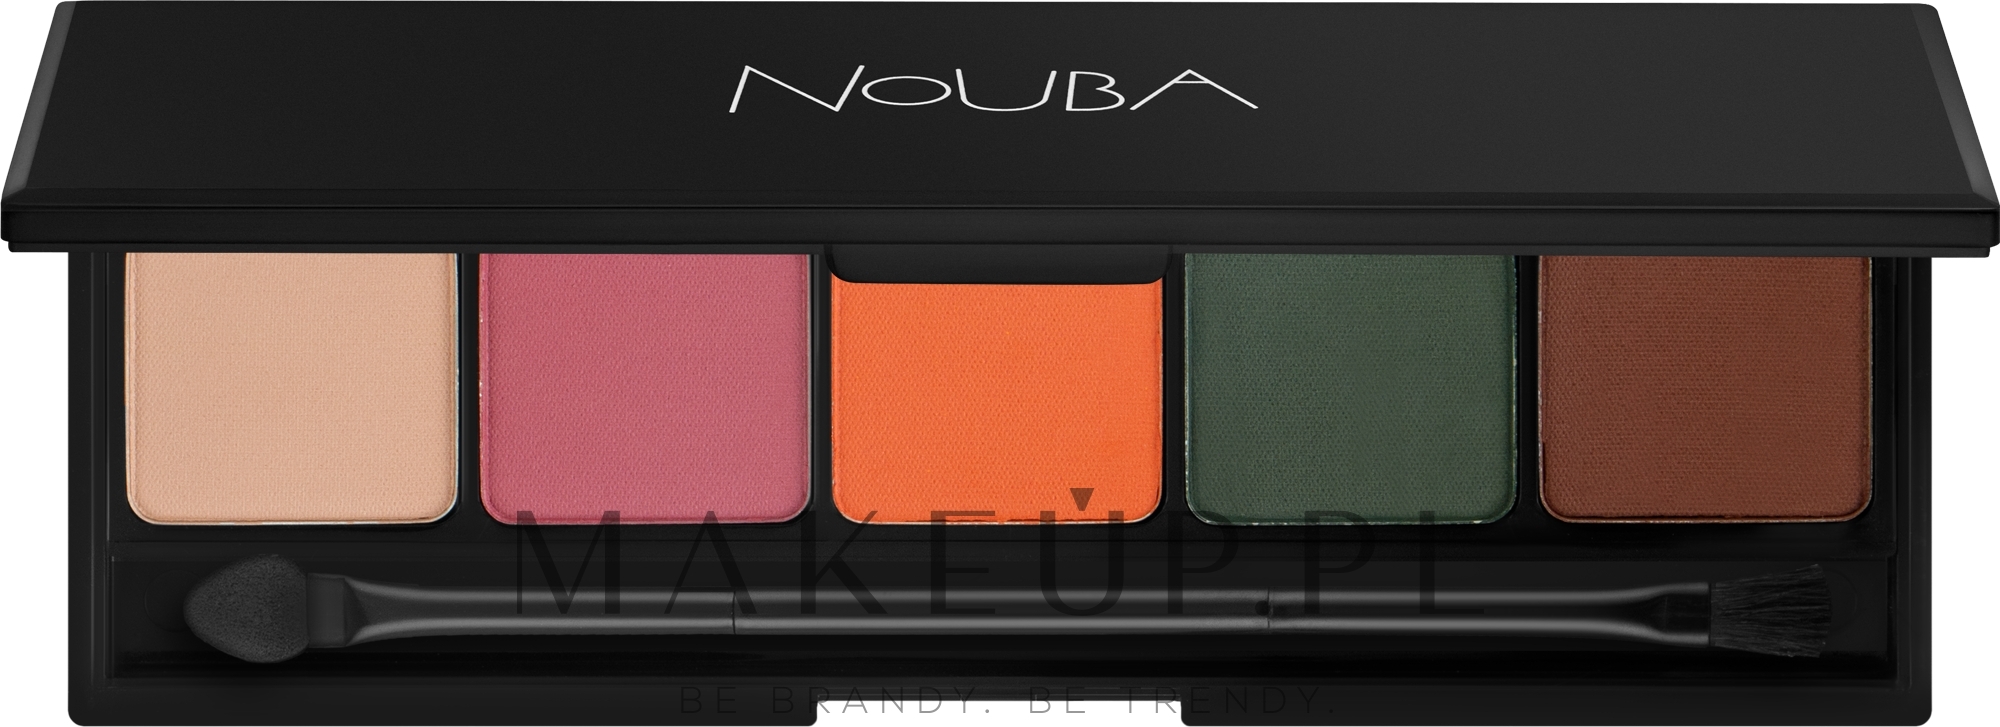 Paletka cieni do powiek - Nouba Celebrity Eyeshadow Palette — Zdjęcie 10 g